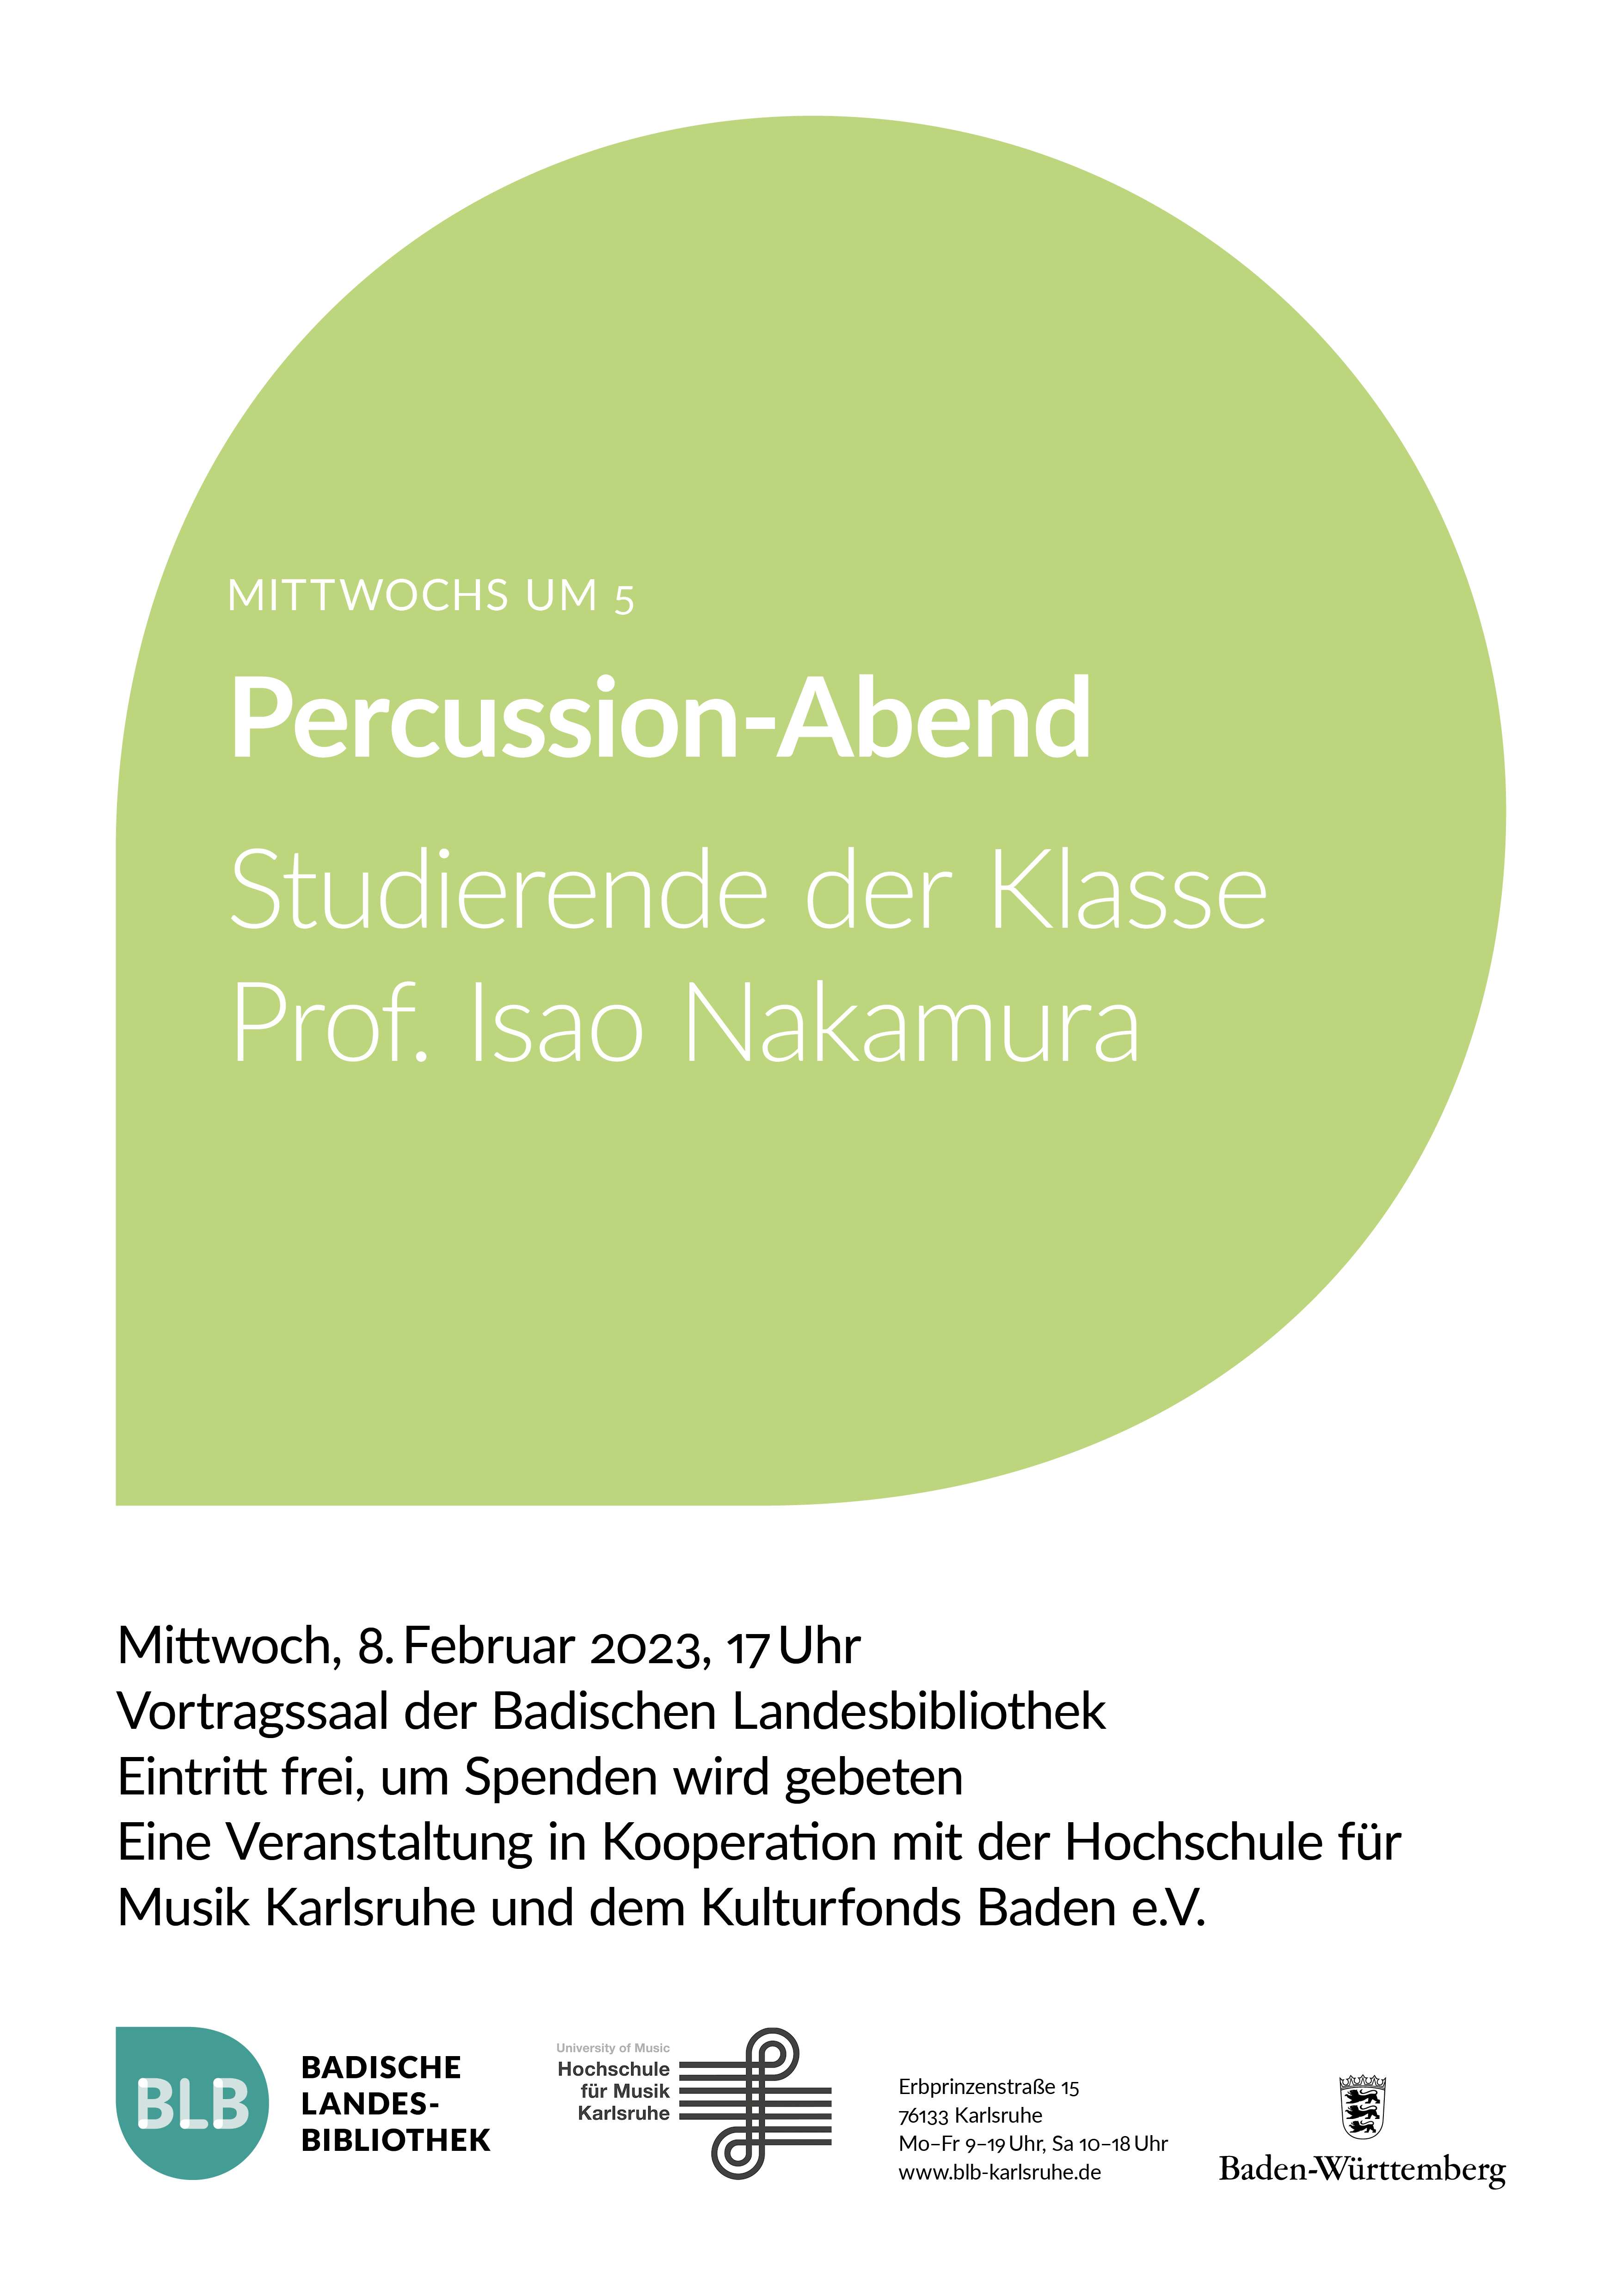 Zu sehen ist ein grünes Monogon mit der Aufschrift: "Percussion-Abend." Bei dem Konzert spielen Studierende der Klasse von Professor Isao Nakamura. Das Konzert findet am Mittwoch, den 8. Februar 2023 um 17 Uhr im Vortragssaal der Badischen Landesbibliothek Karlsruhe statt. 